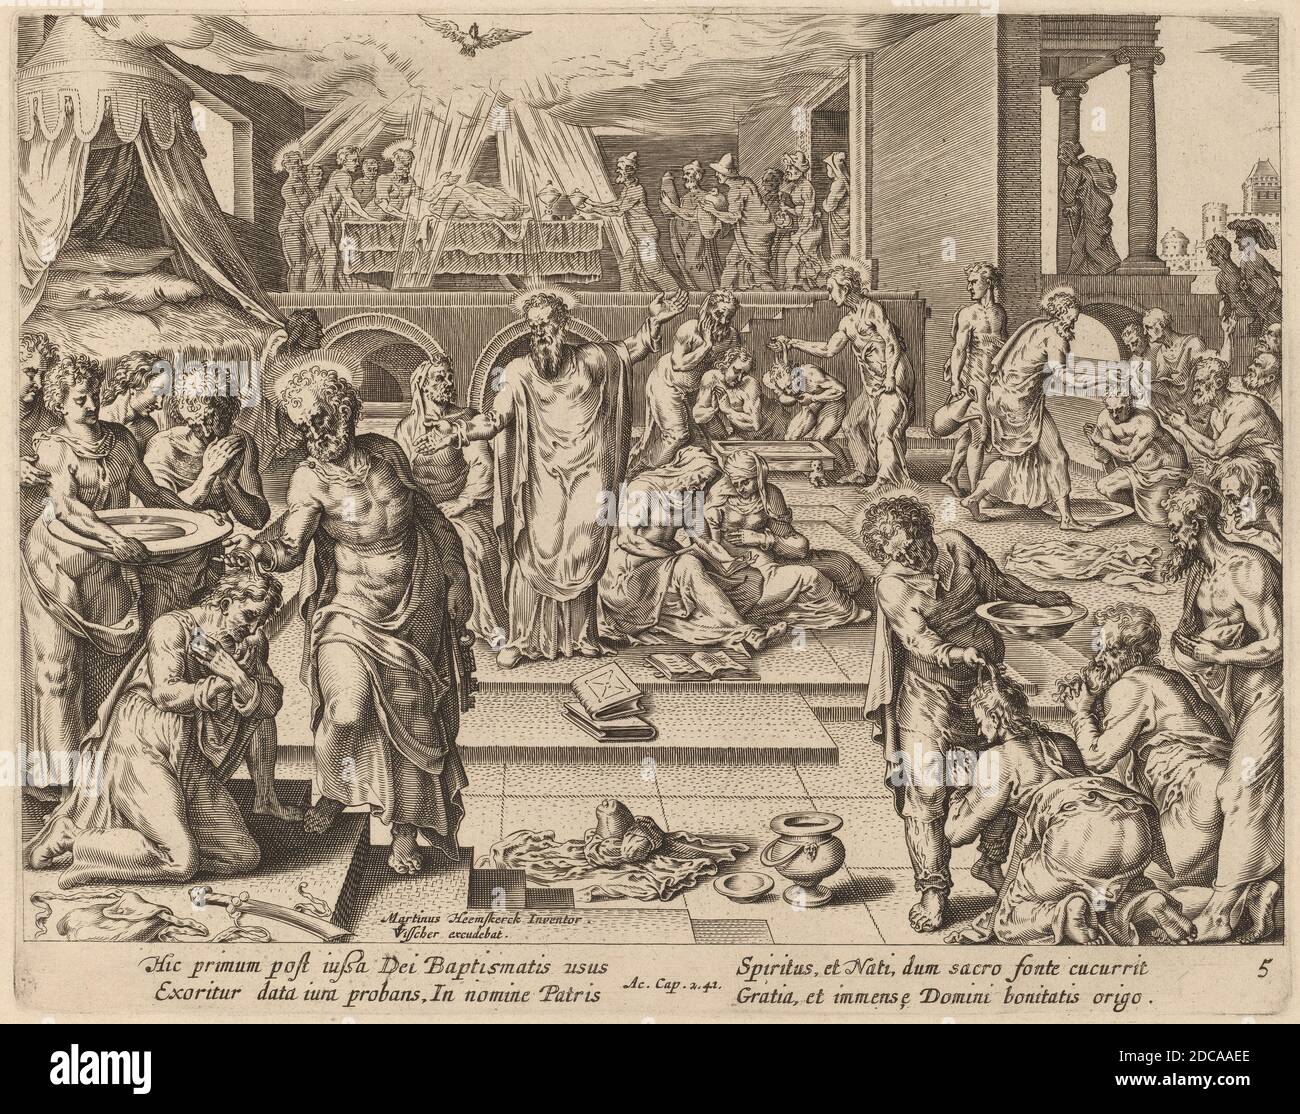 Philip Galle, (Künstler), Flämisch, 1537 - 1612, Maerten van Heemskerck, (Künstler nach), Niederlandisch, 1498 - 1574, viele sind getauft, Apostelgeschichte, (Serie), Gravur Stockfoto